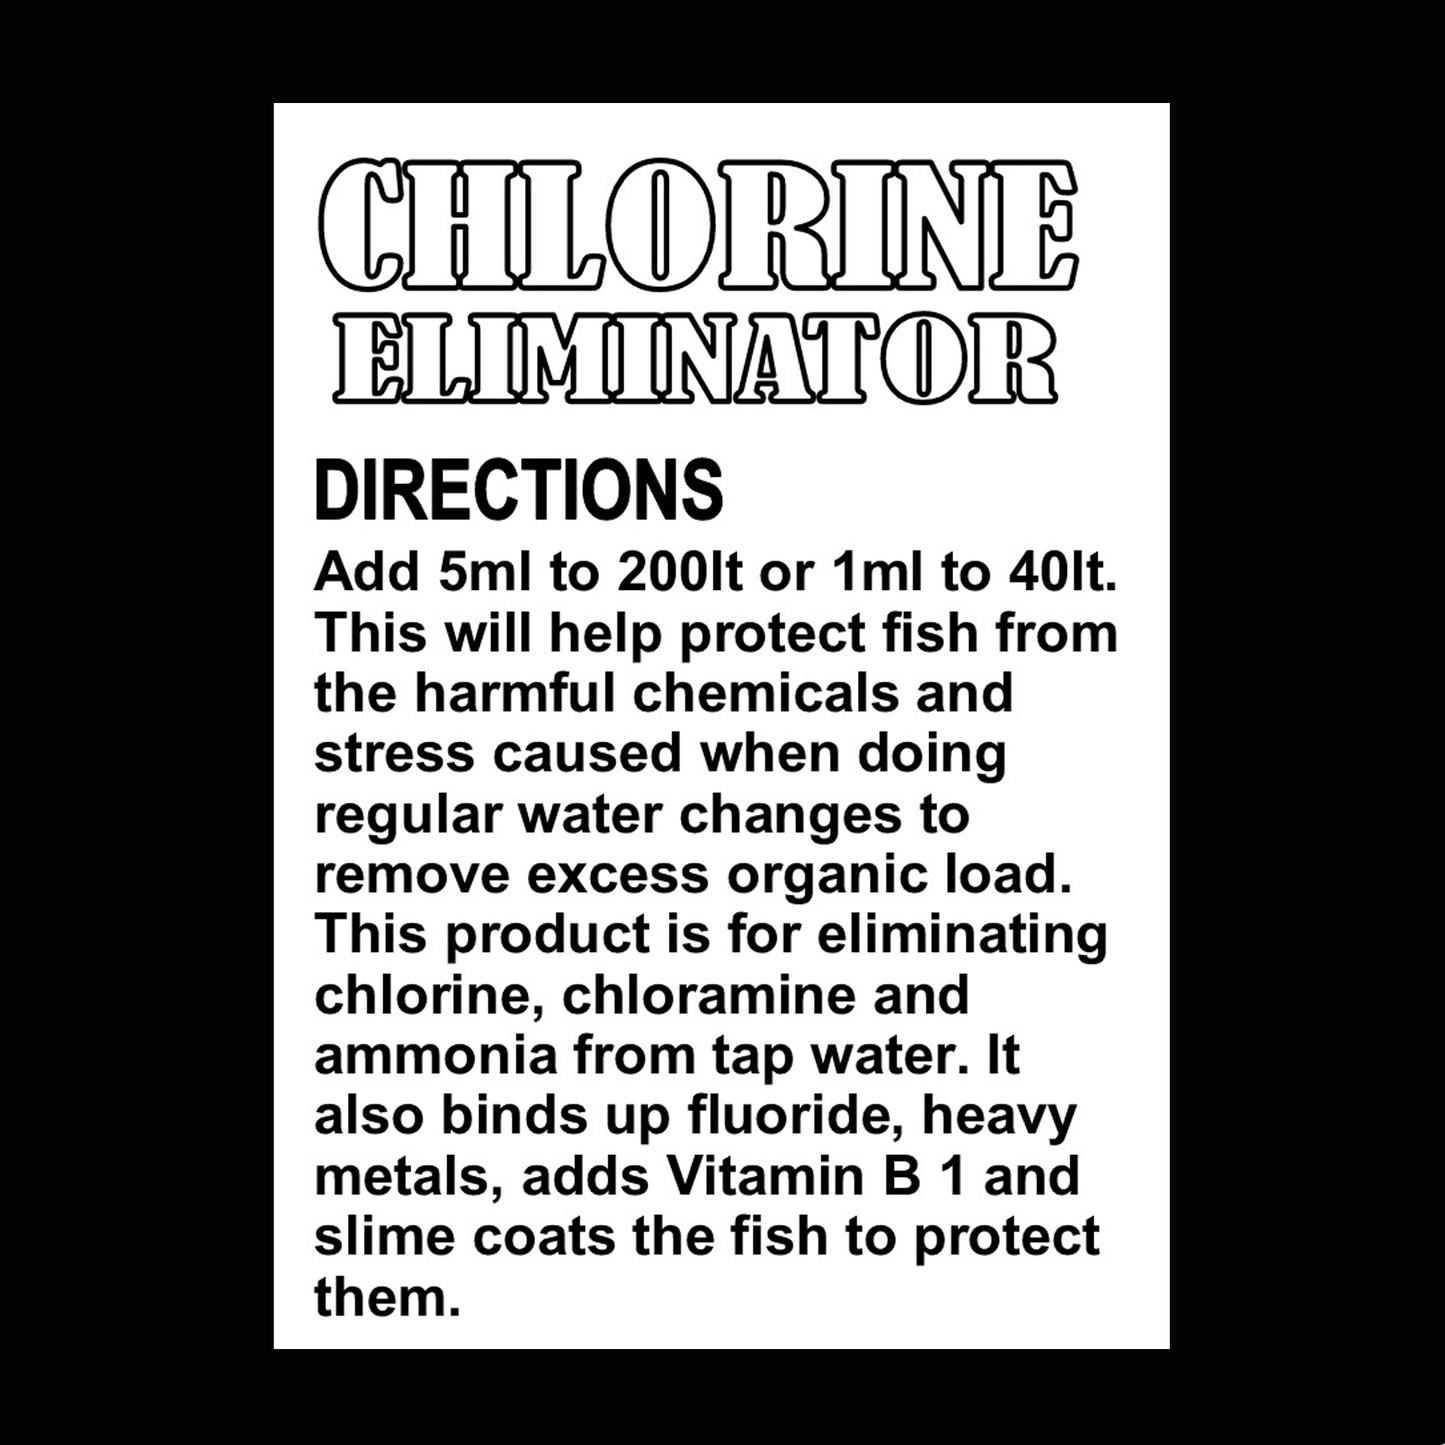 Chlorine Eliminator Concentrate 4 litre